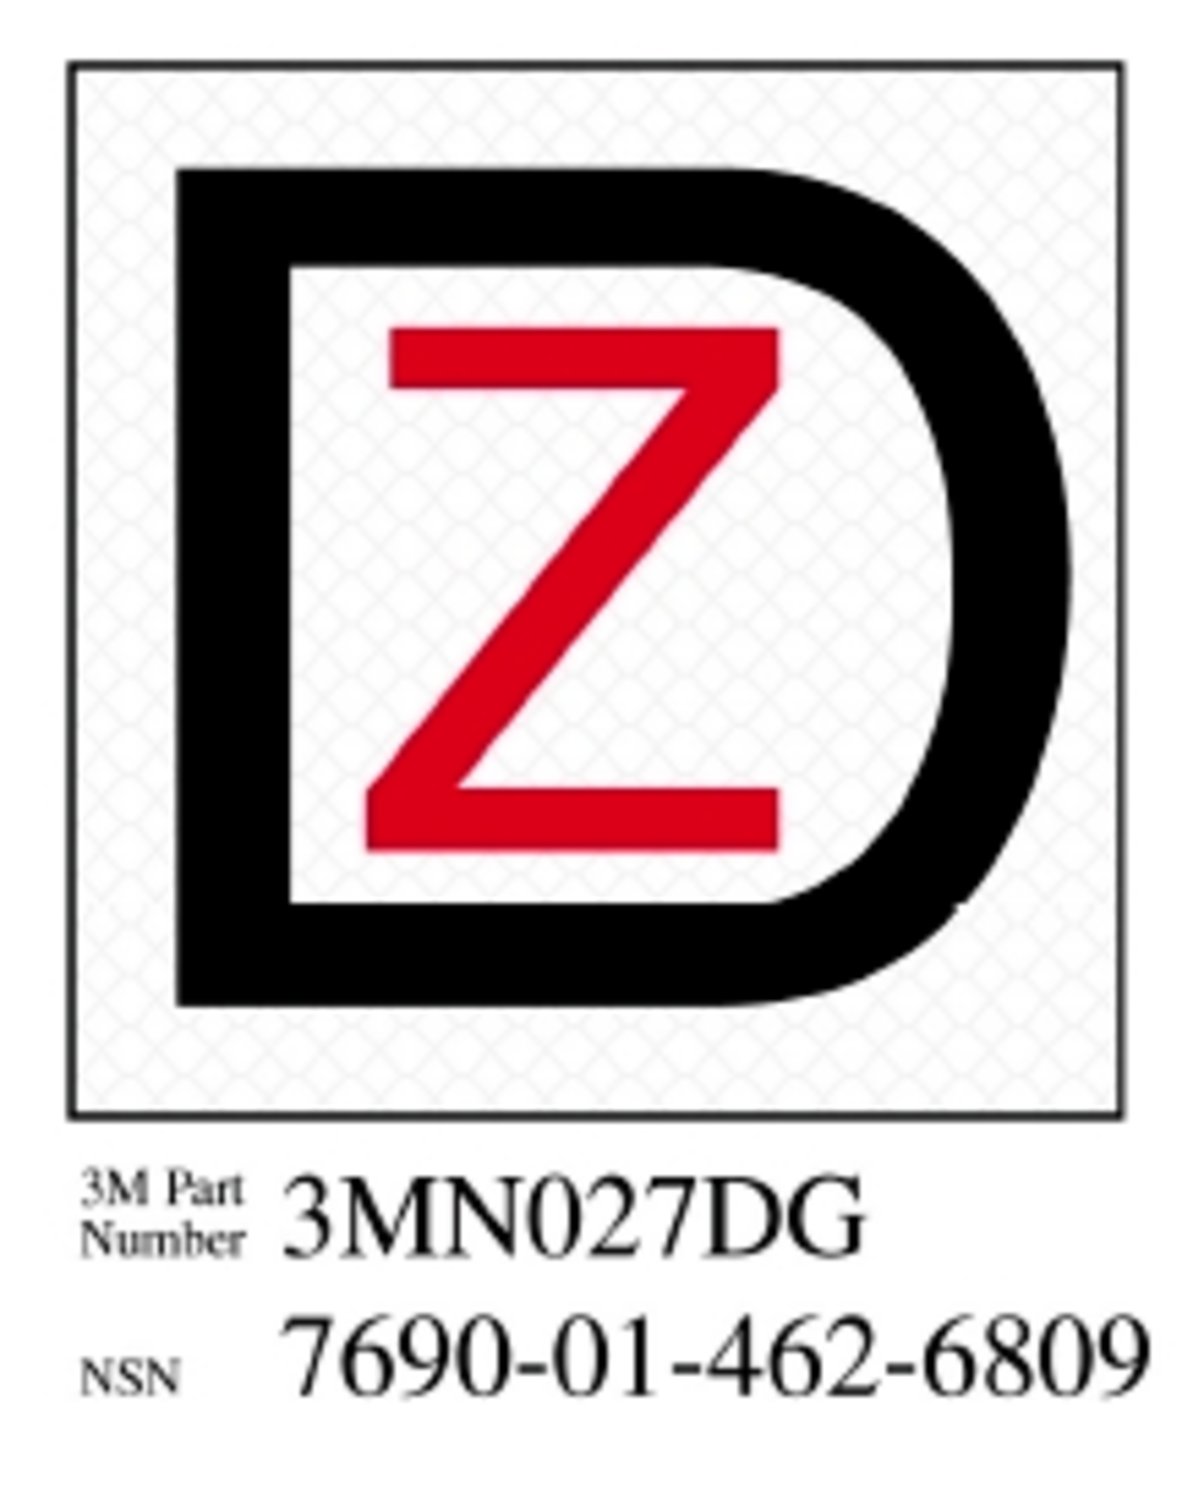 7010388576 - 3M Diamond Grade Damage Control Sign 3MN027DG, "Dk Ship Zebra", 2 in x
2 in, 10/Package